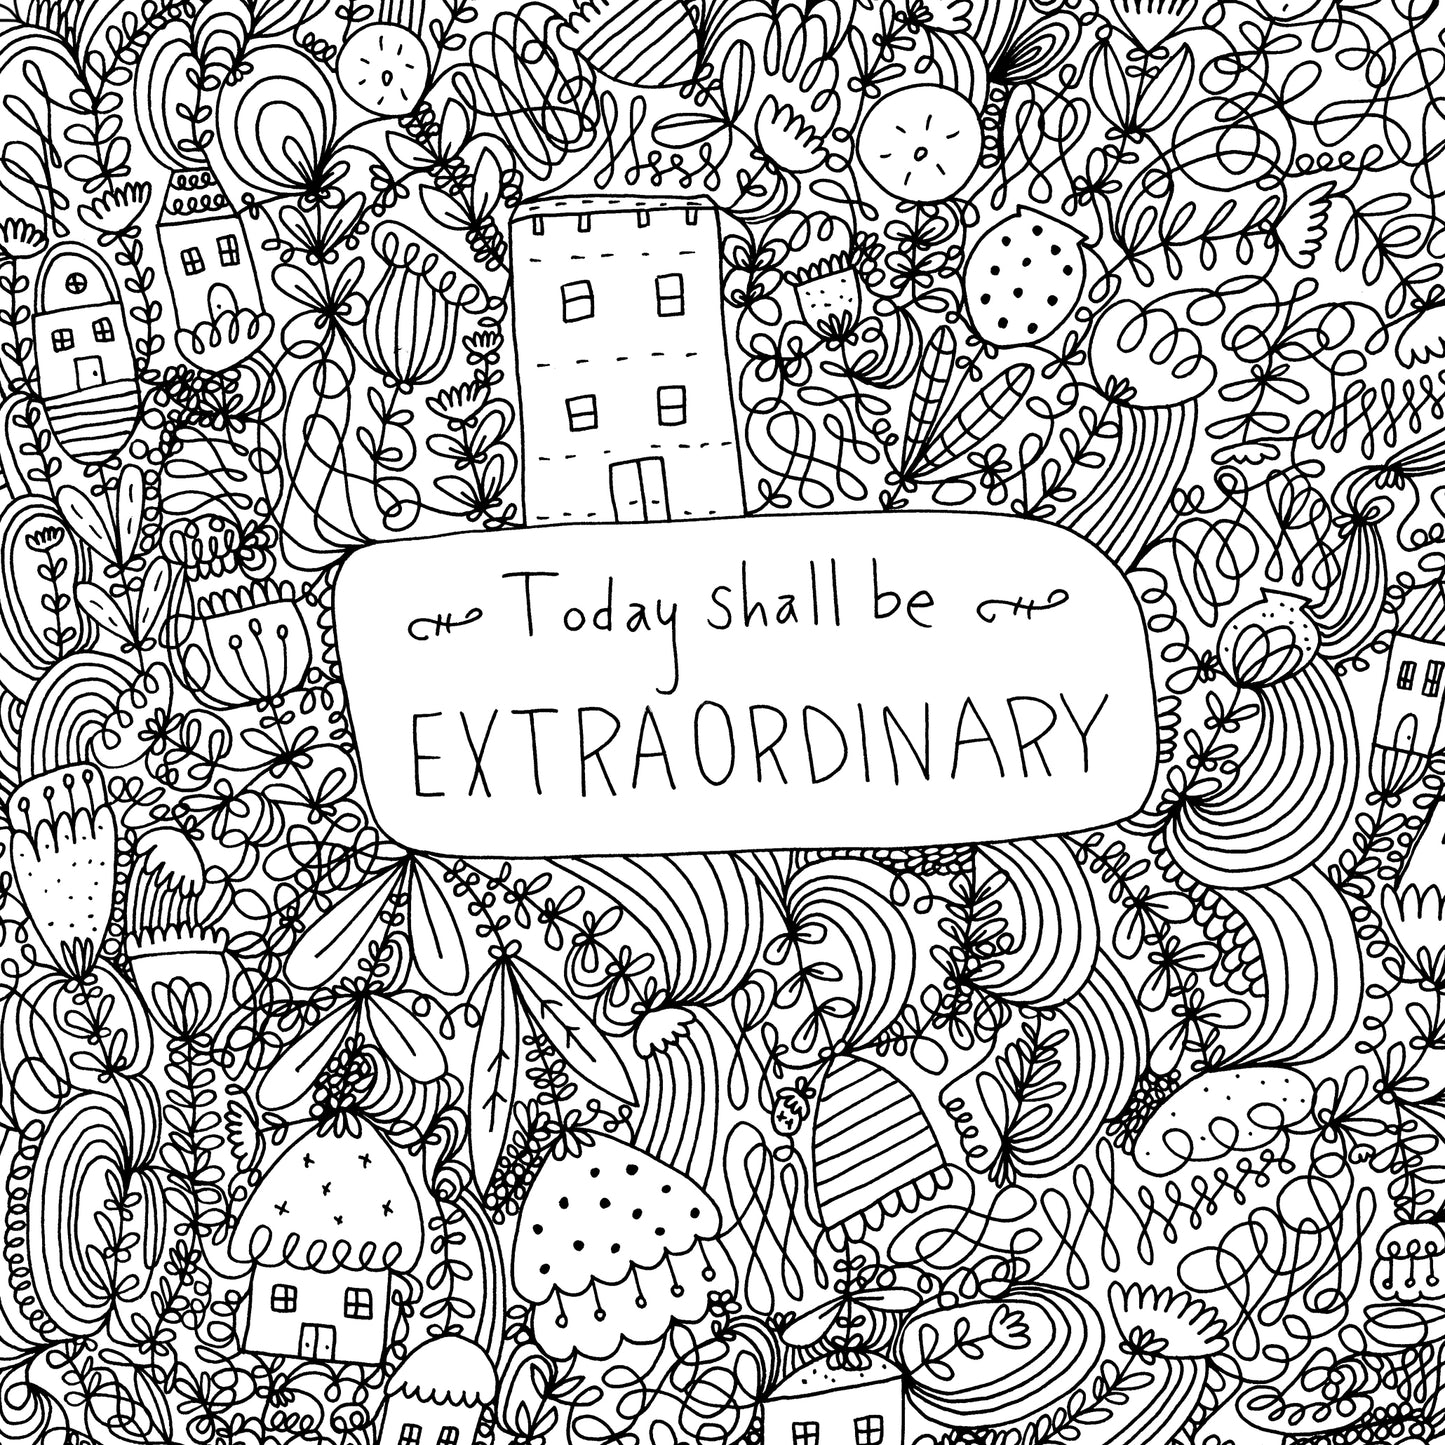 Today Shall Be Extraordinary